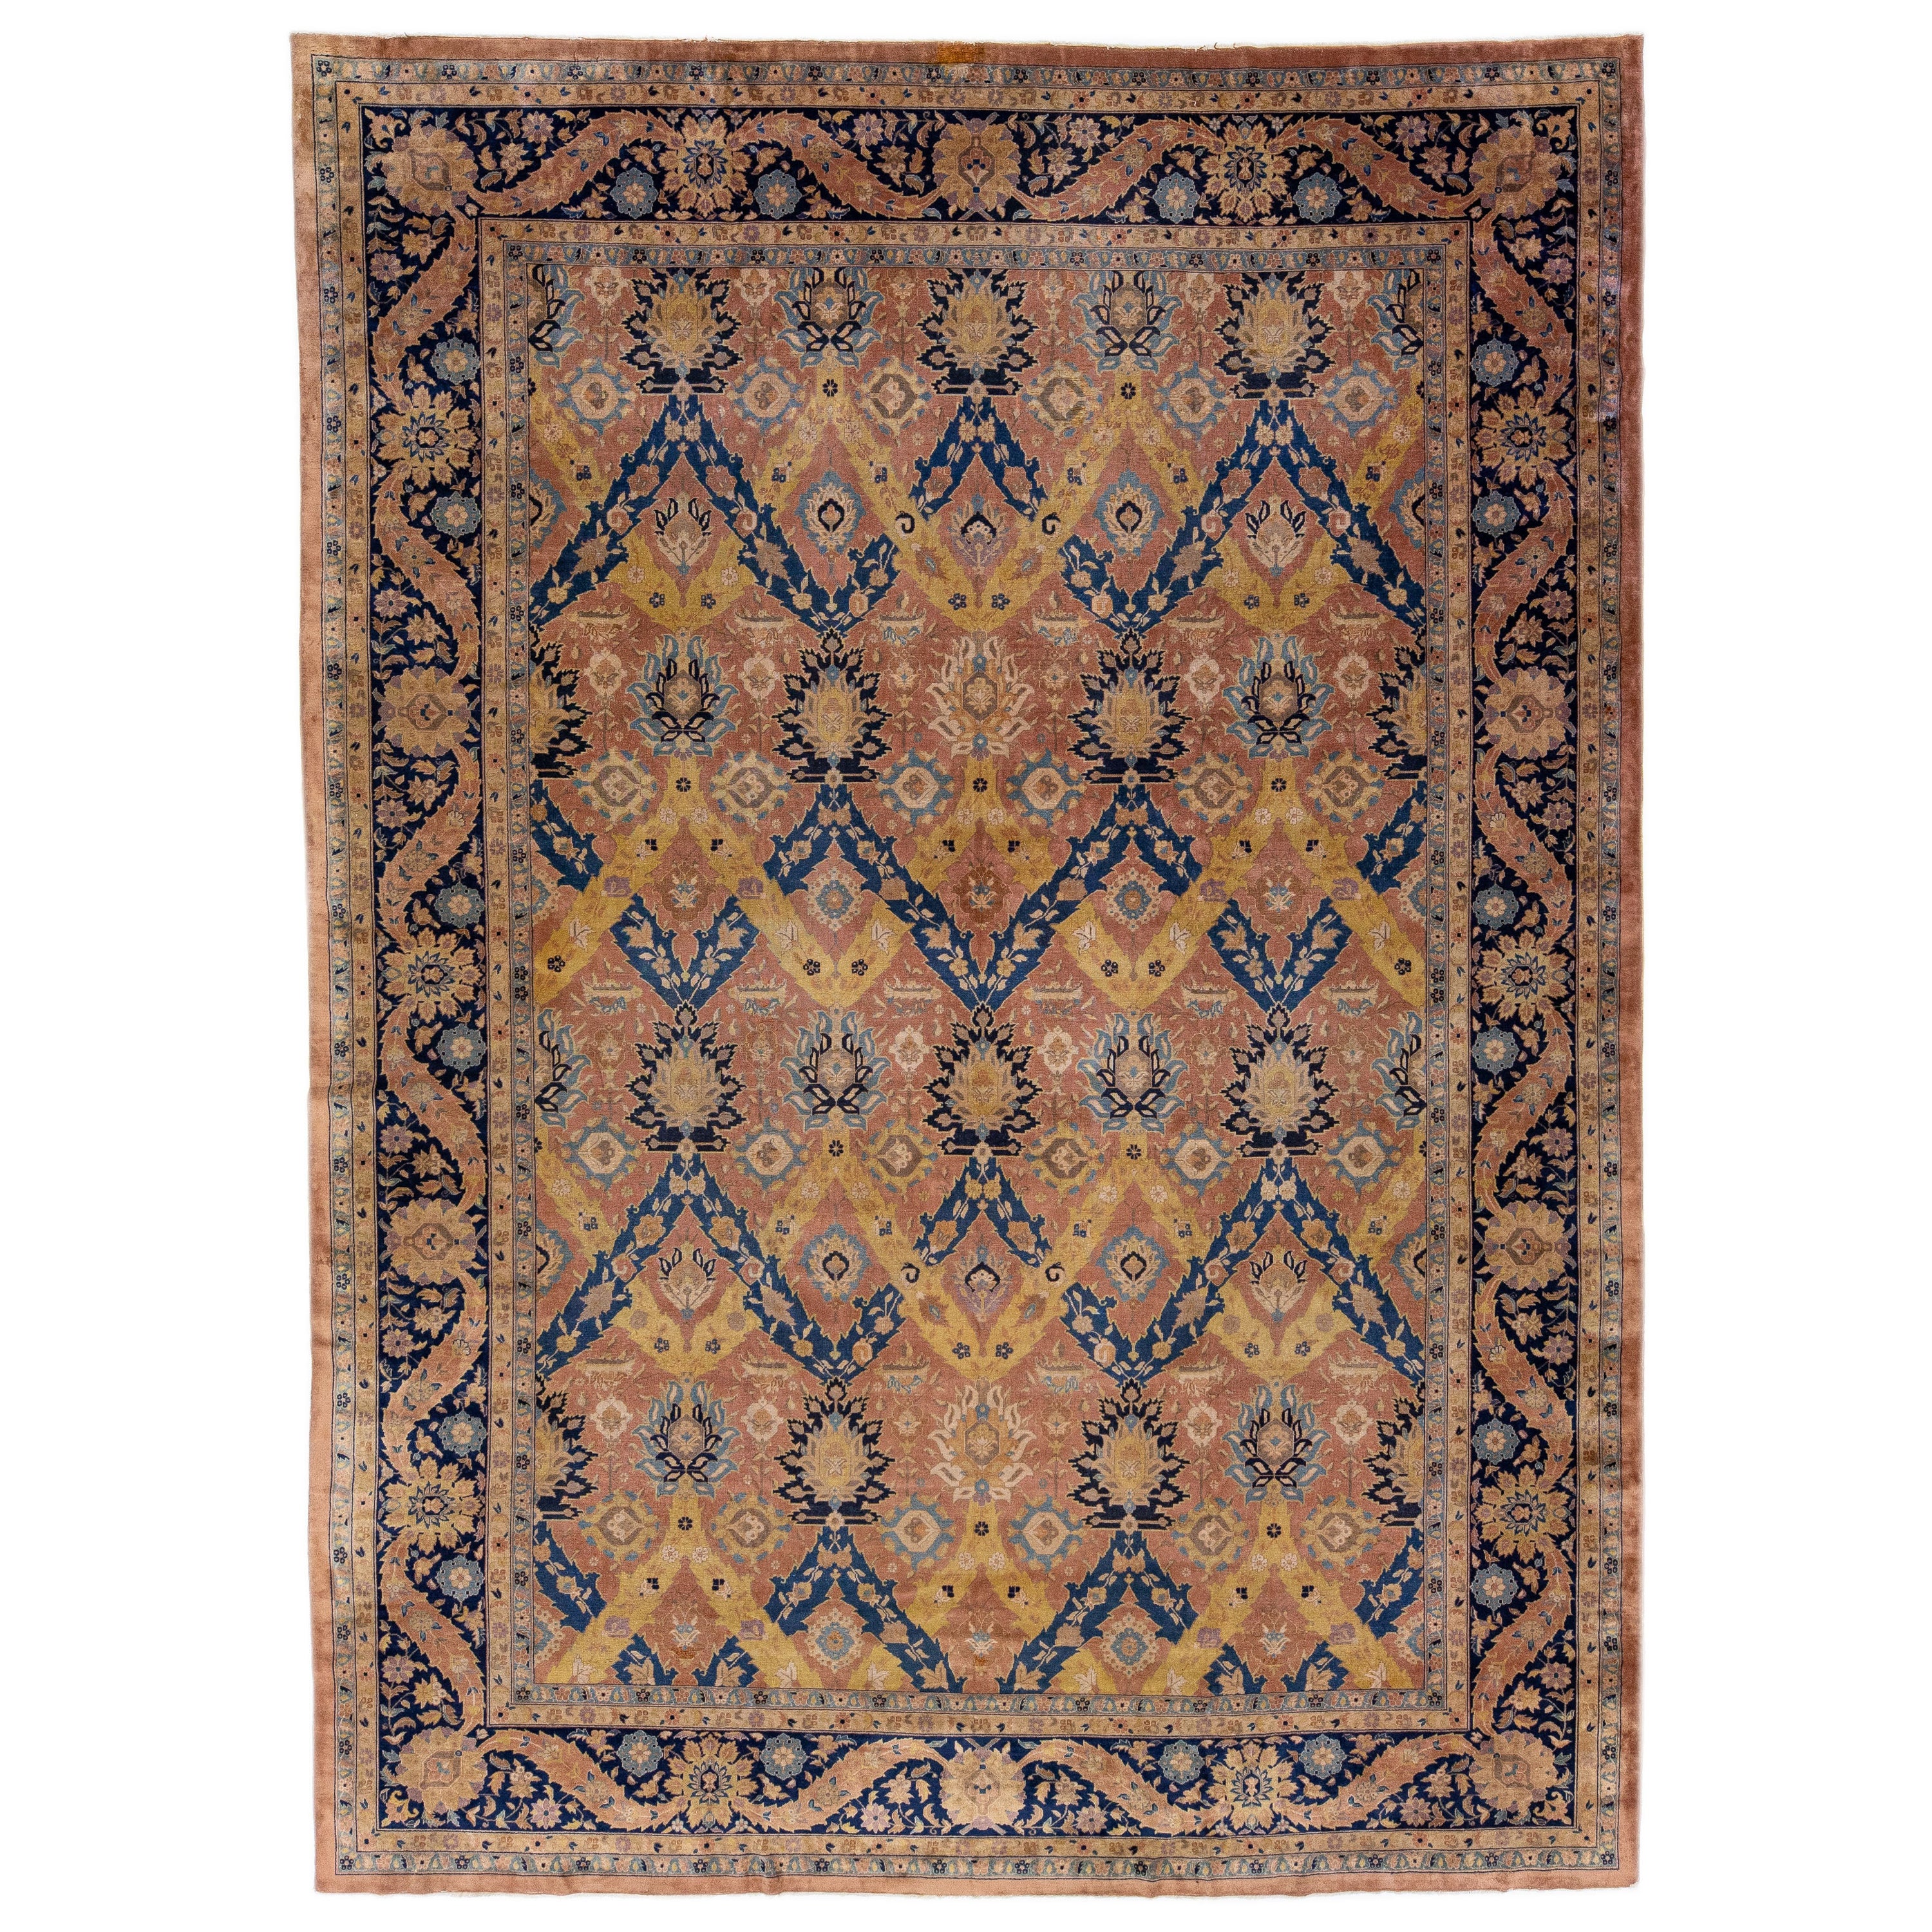 Antiker indischer Agra handgefertigter Teppich aus Wolle mit Allover-Muster in Pfirsich